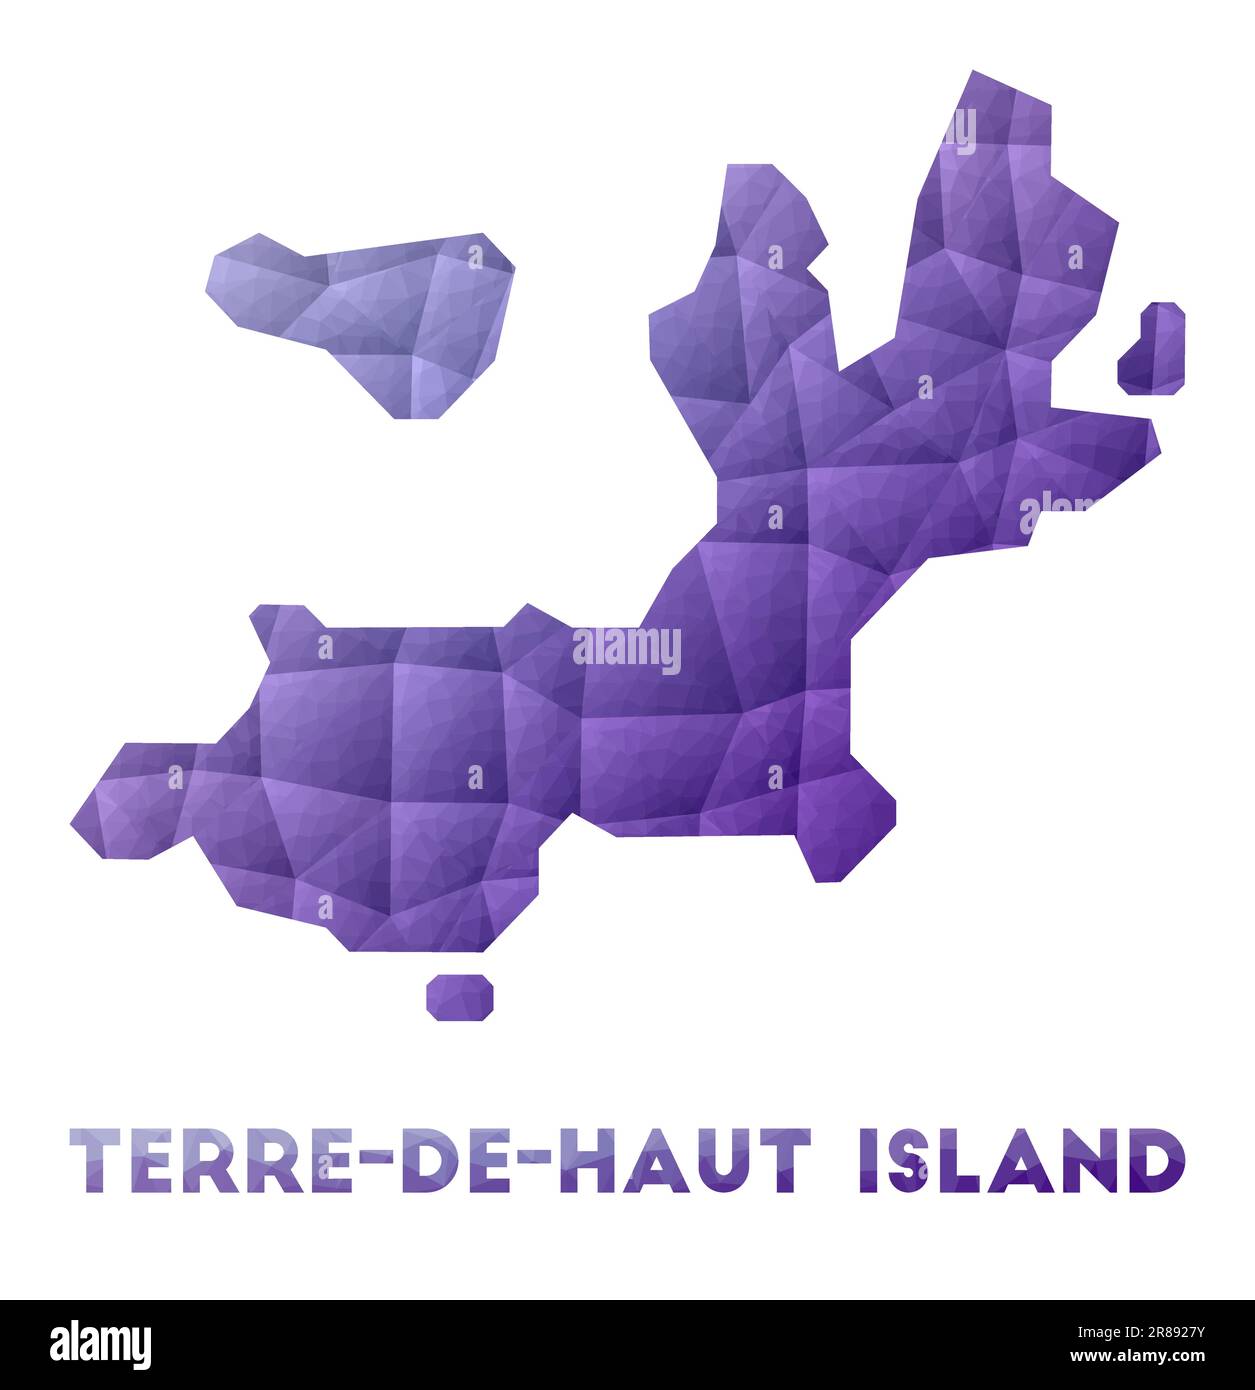 Carte de l'île de Terre-de-Haut. Illustration poly basse de l'îlot. Motif géométrique violet. Illustration de vecteur polygonal. Illustration de Vecteur